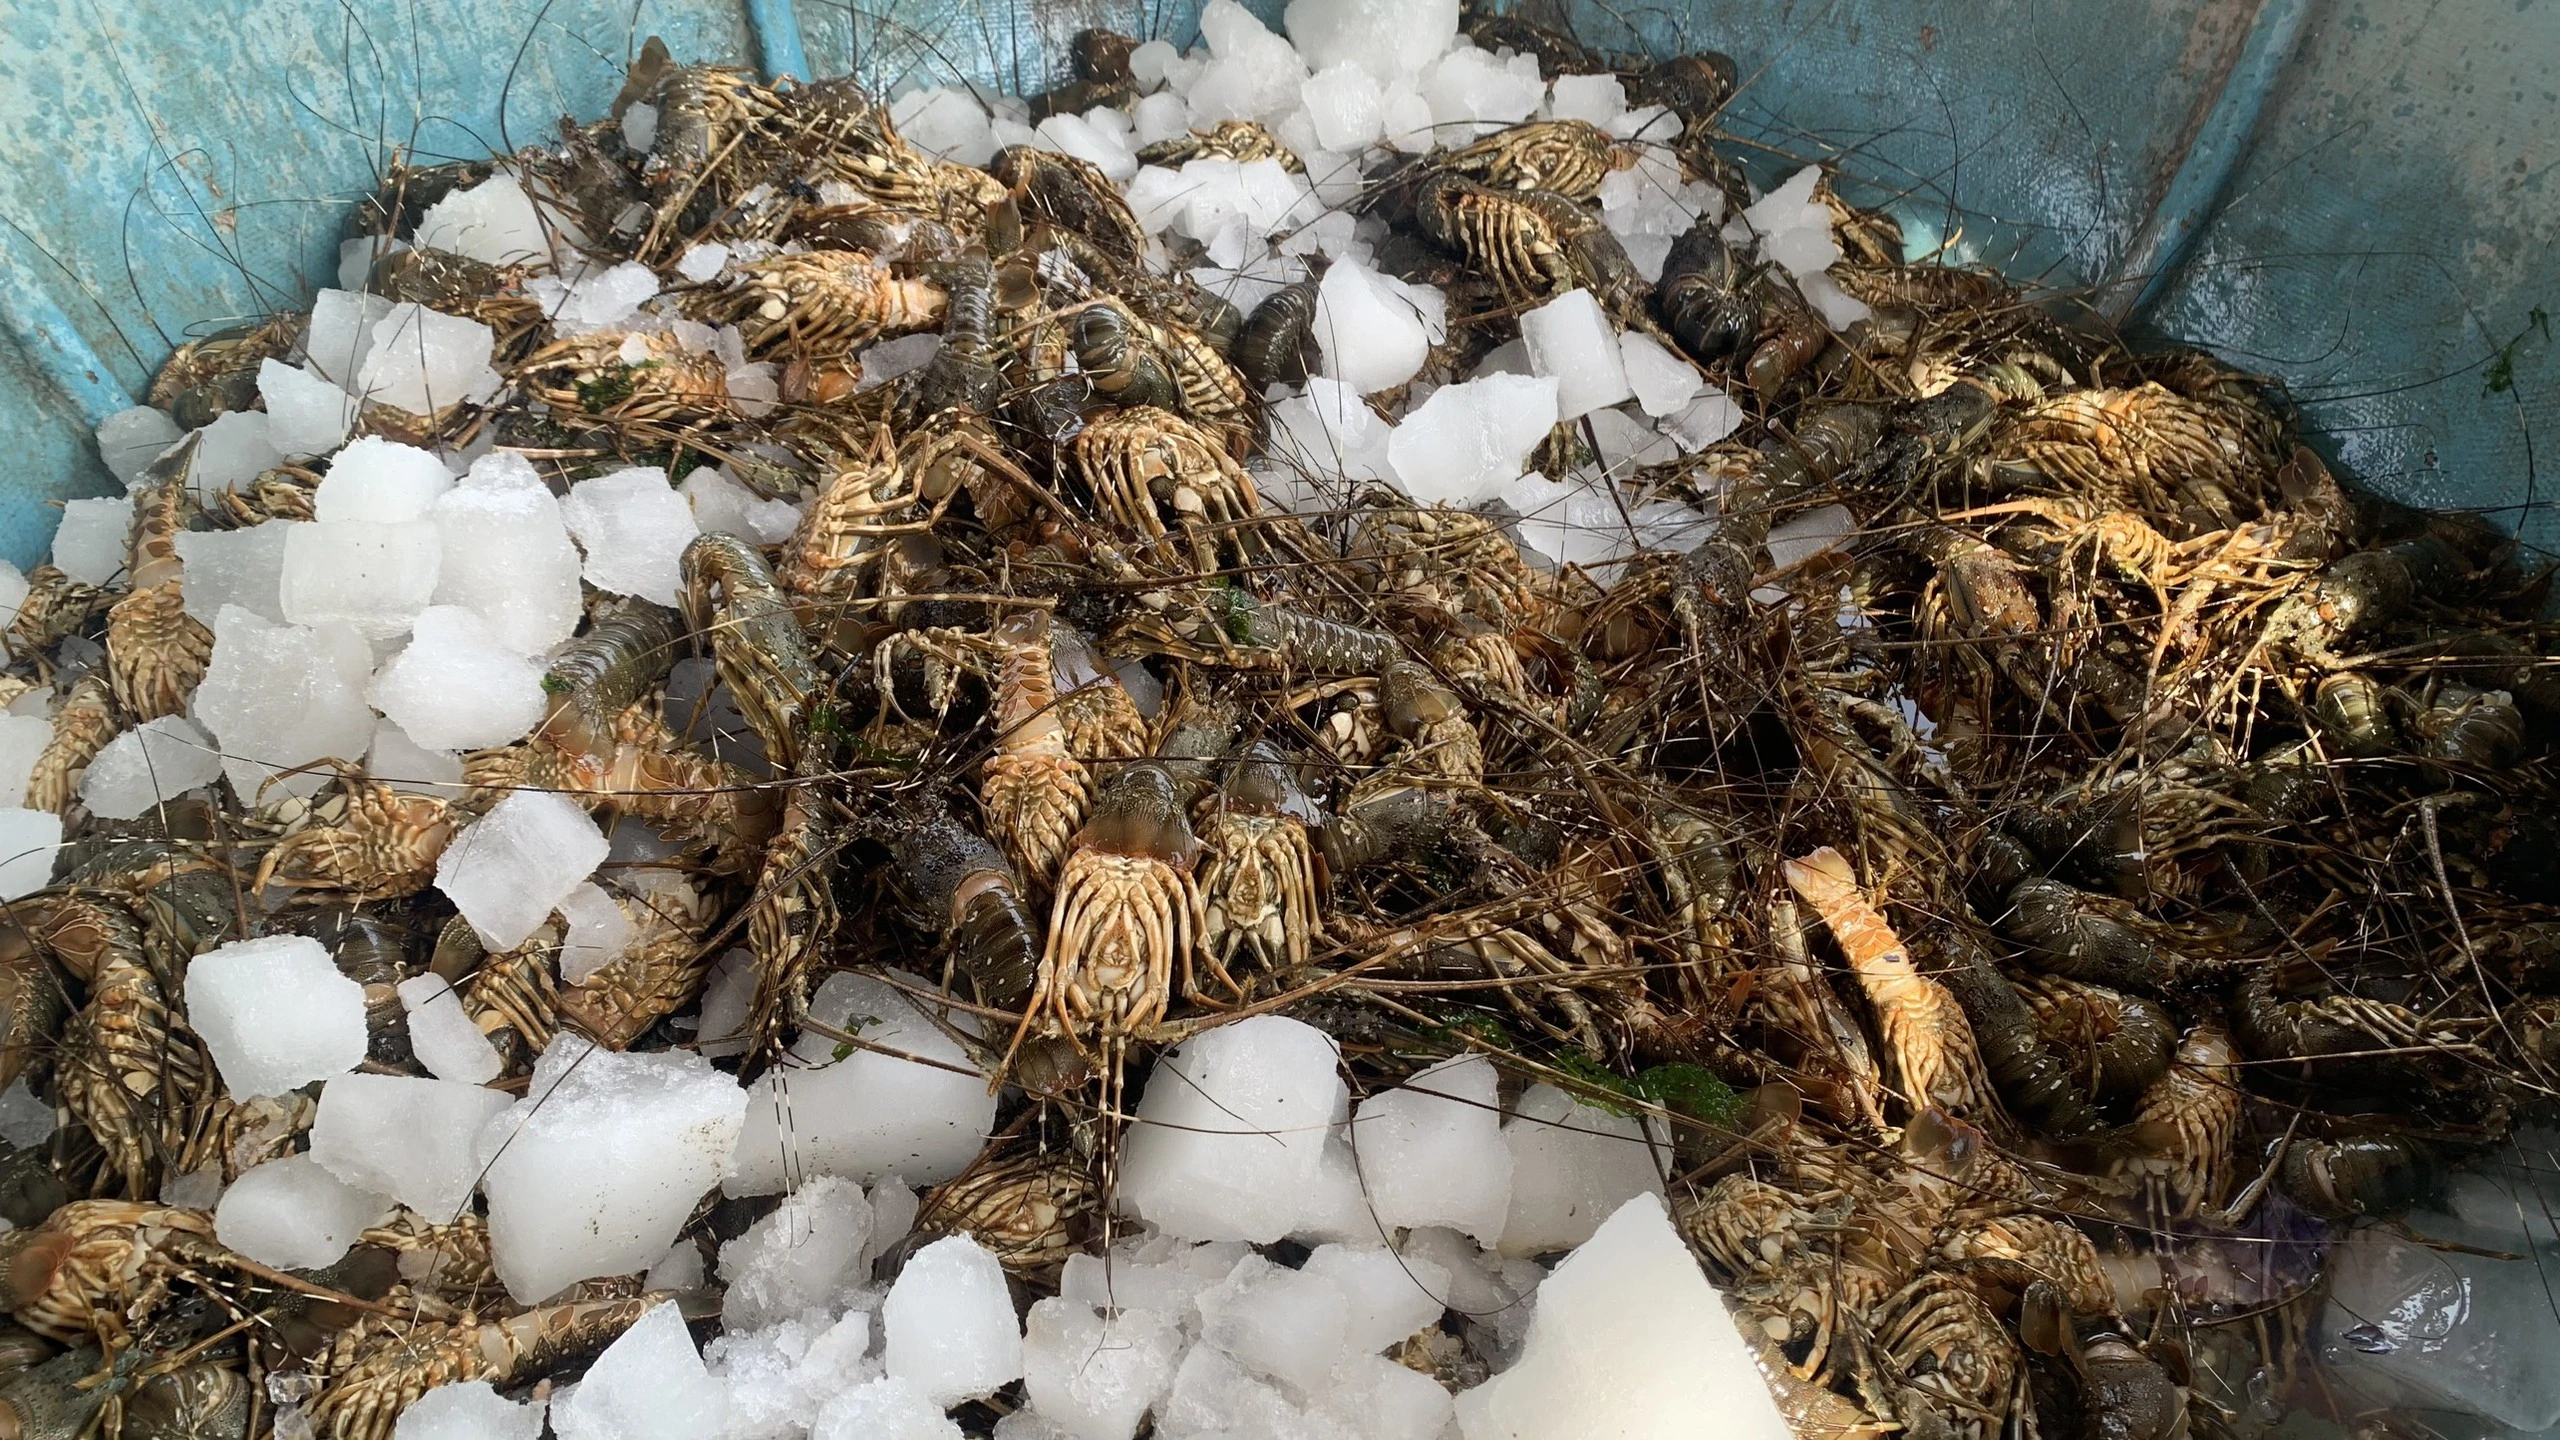 Phú Yên: Tôm cá nuôi chết hàng loạt, ngư dân lao đao